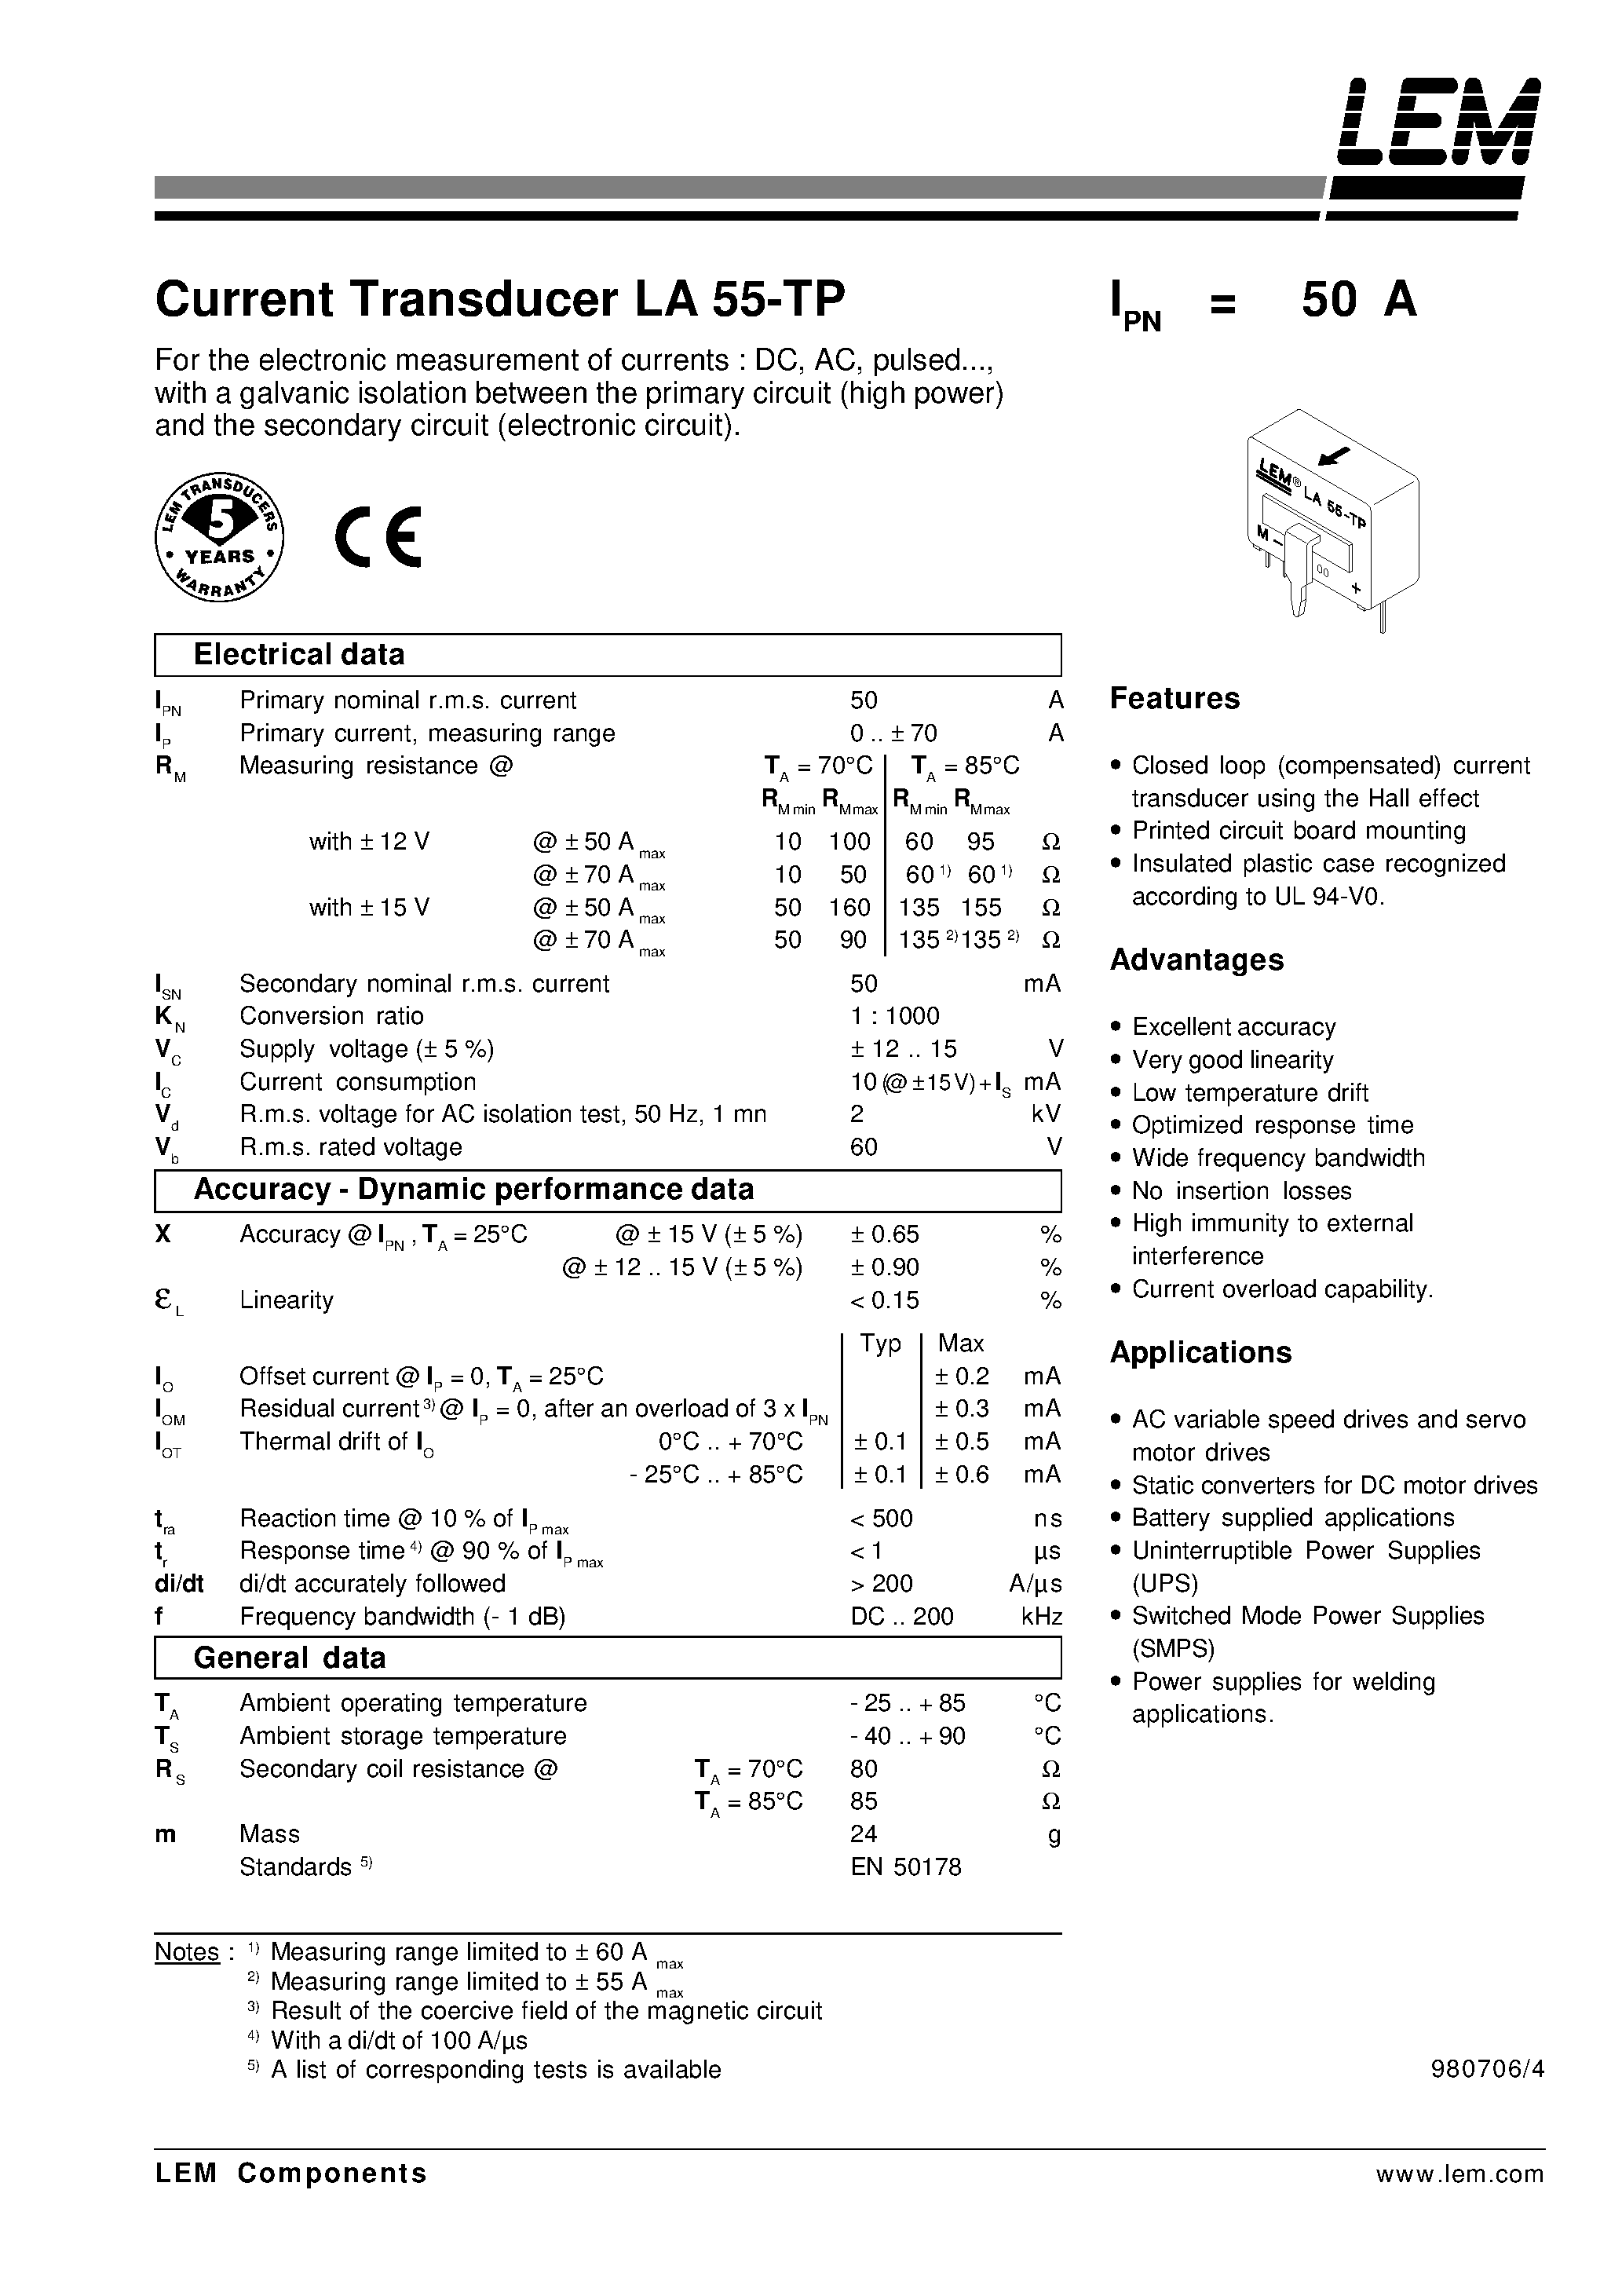 Datasheet LA55-TP - Current Transducer LA 55-TP page 1